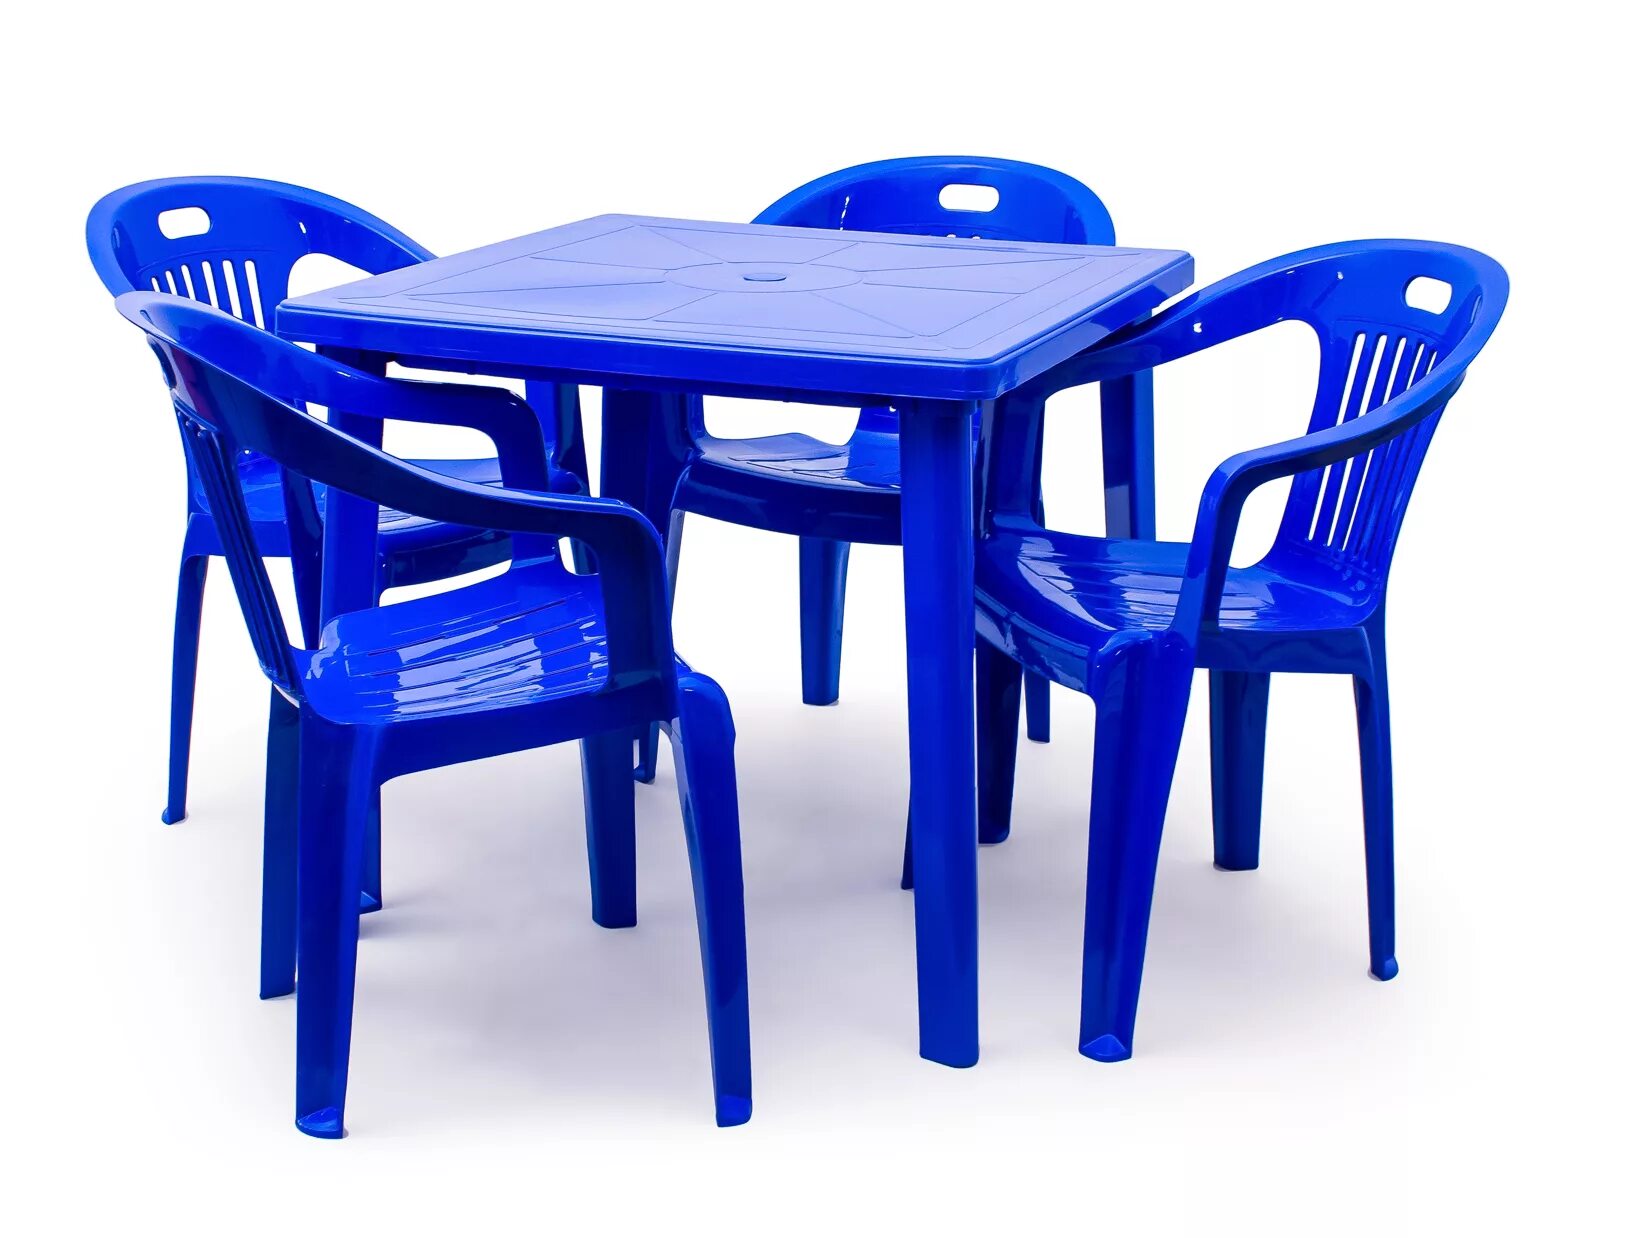 Стол стандарт пластик групп квадратный 800х800. Комплект пластиковой мебели (стол Нирвана + 8 кресел Флинт). Кресло стандарт пластик комфорт-1. Набор мебели 4пр стол(бук) + 4стула(морская волна) Veno. Озон интернет магазин пластиковых